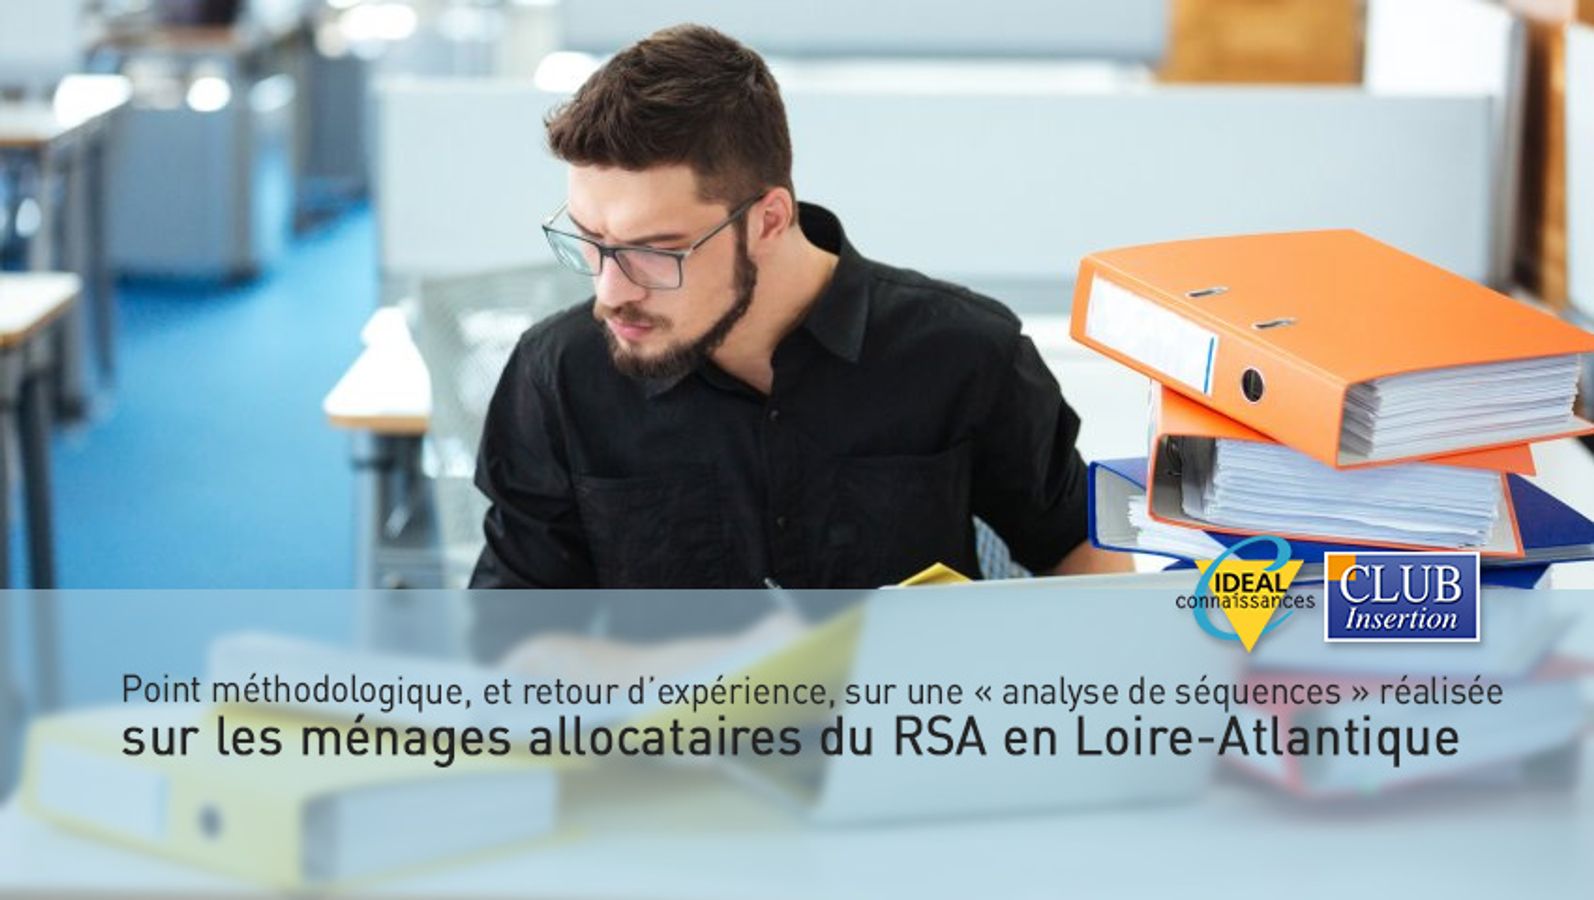 Point méthodologique, et retour d’expérience, sur une « analyse de séquences » réalisée sur les ménages allocataires du RSA en Loire-Atlantique.